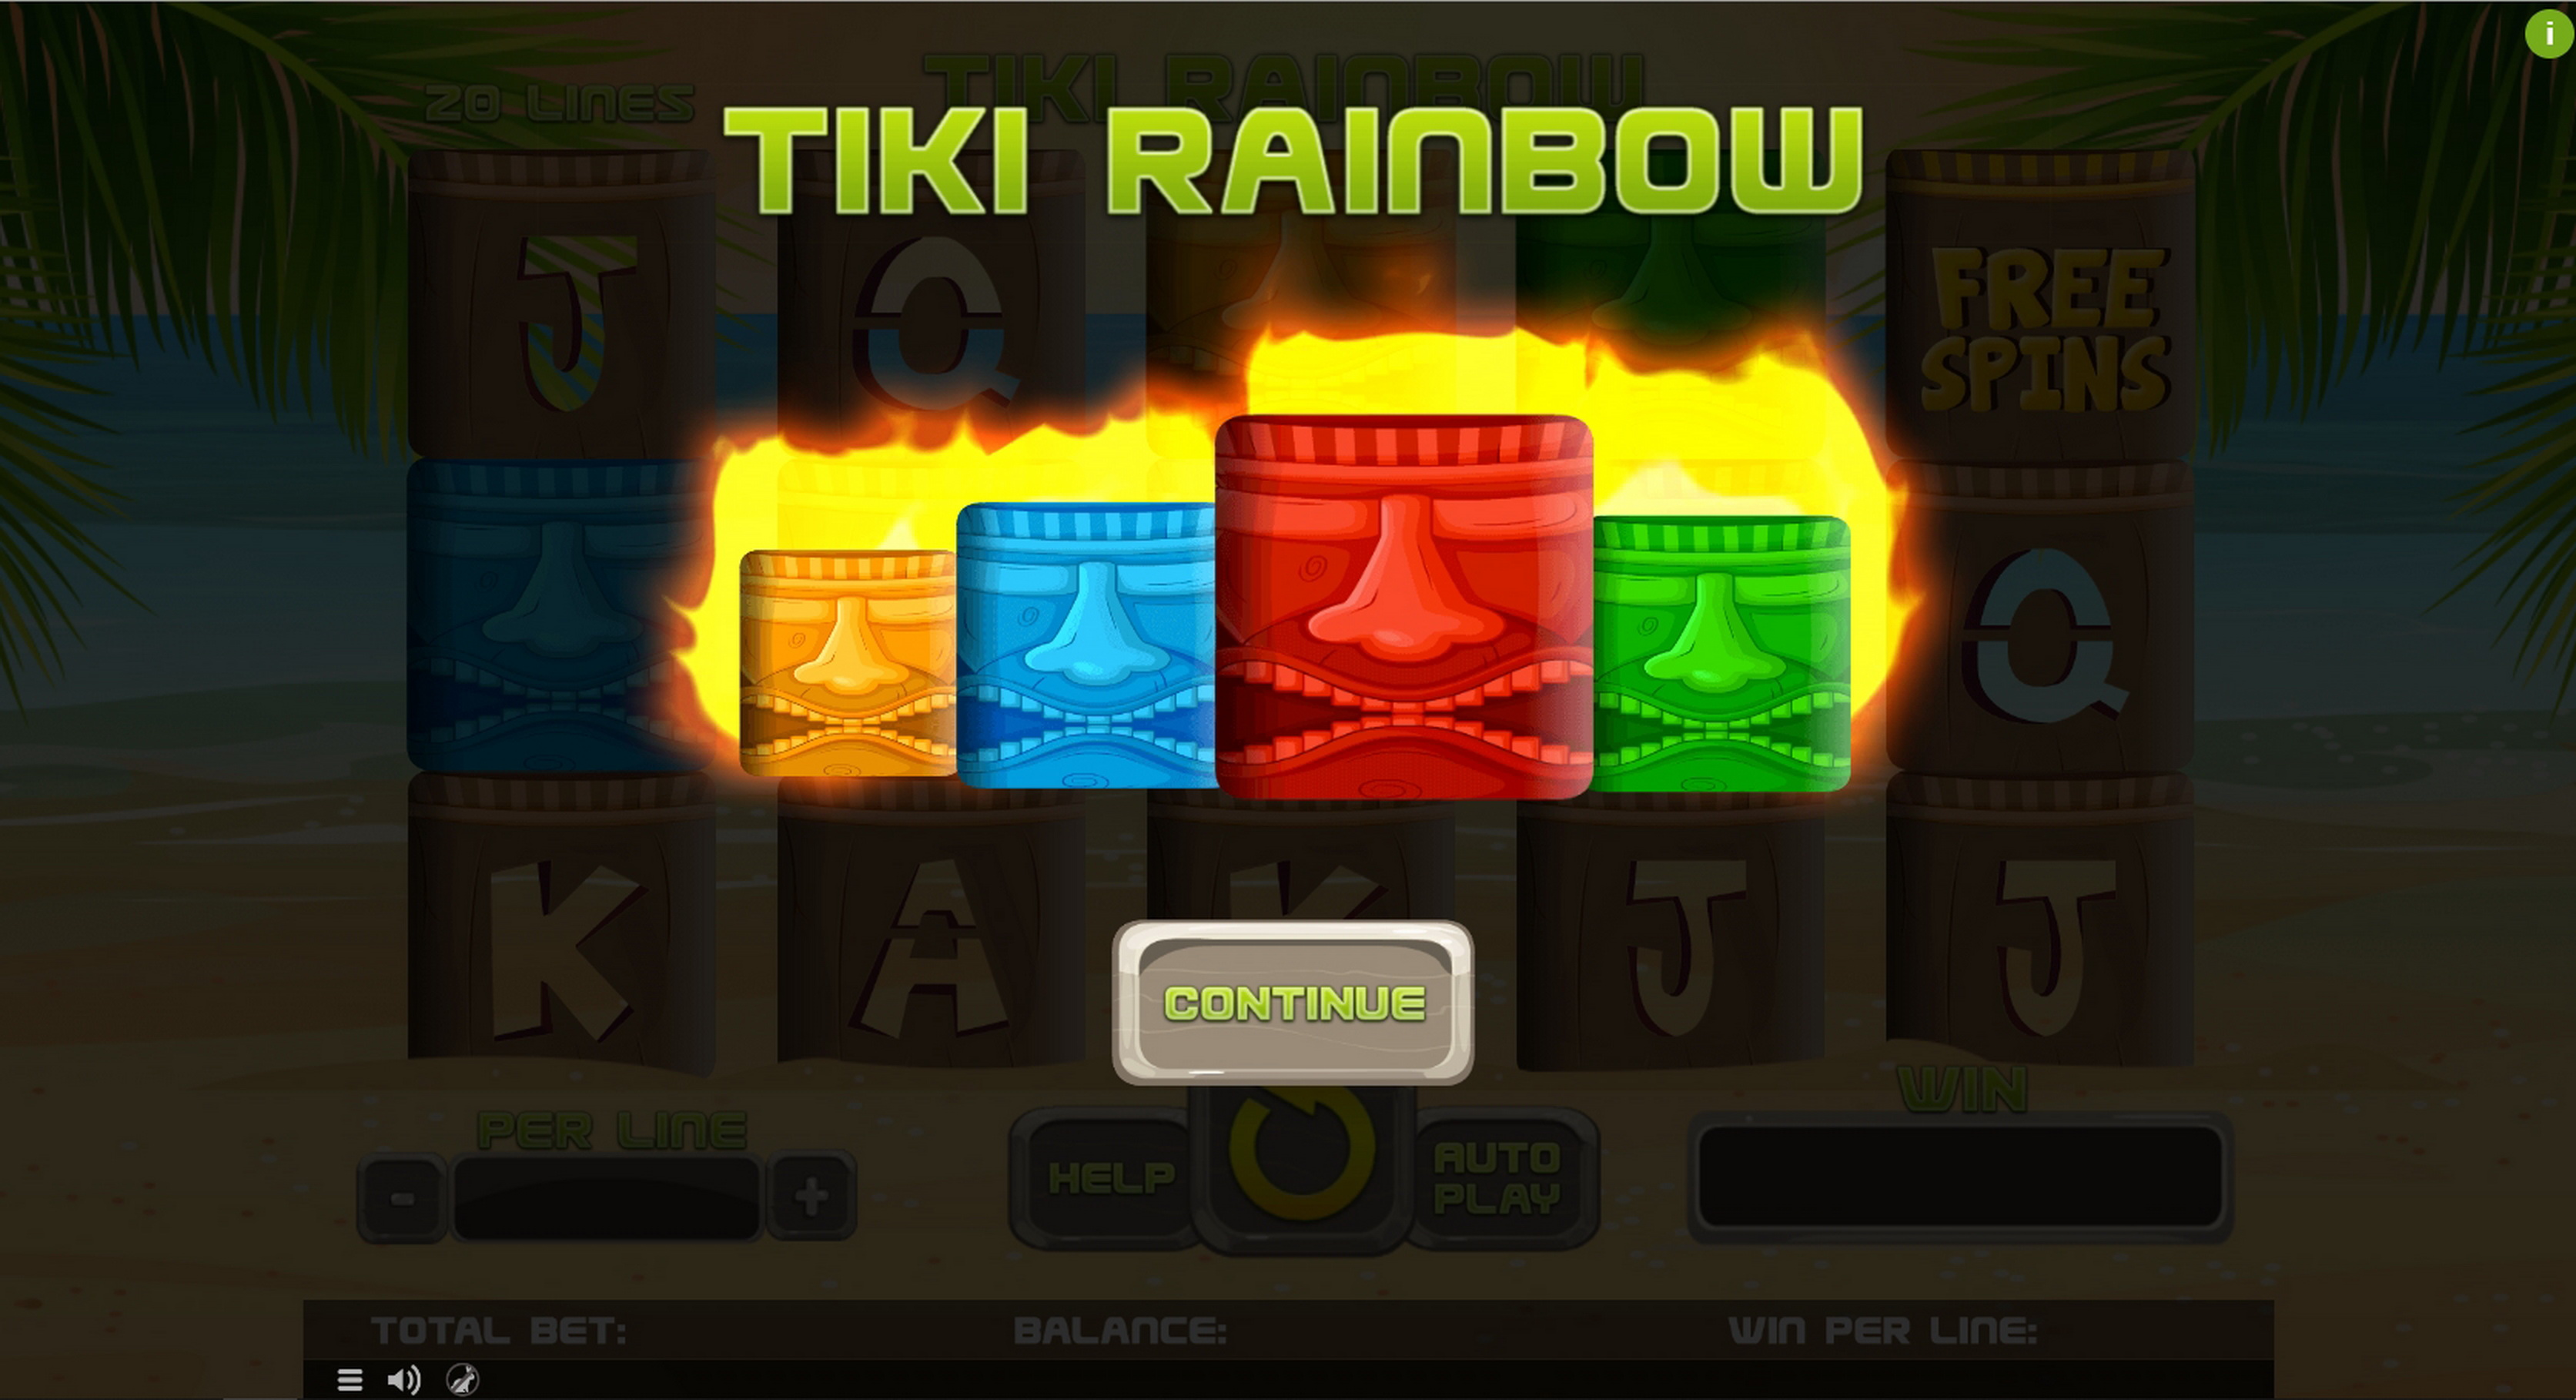 Play Tiki Rainbow Free Casino Slot Game by Spinomenal